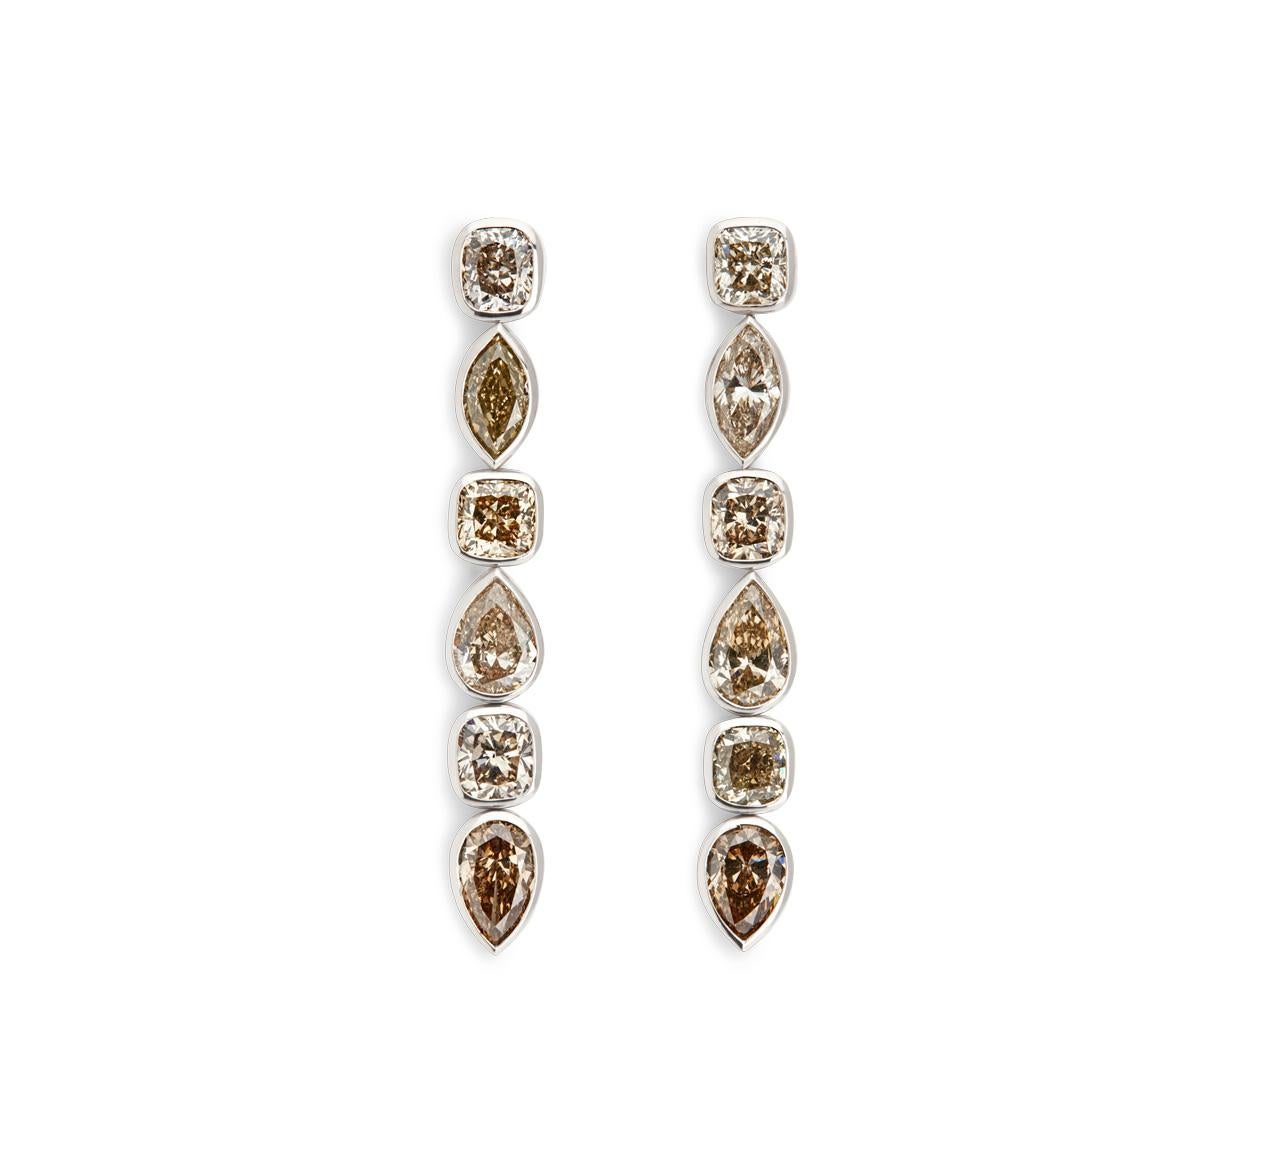 Ces boucles d'oreilles glamour pour tapis rouge sont serties en or blanc 18 carats avec divers diamants cognac de 12,65 ct.